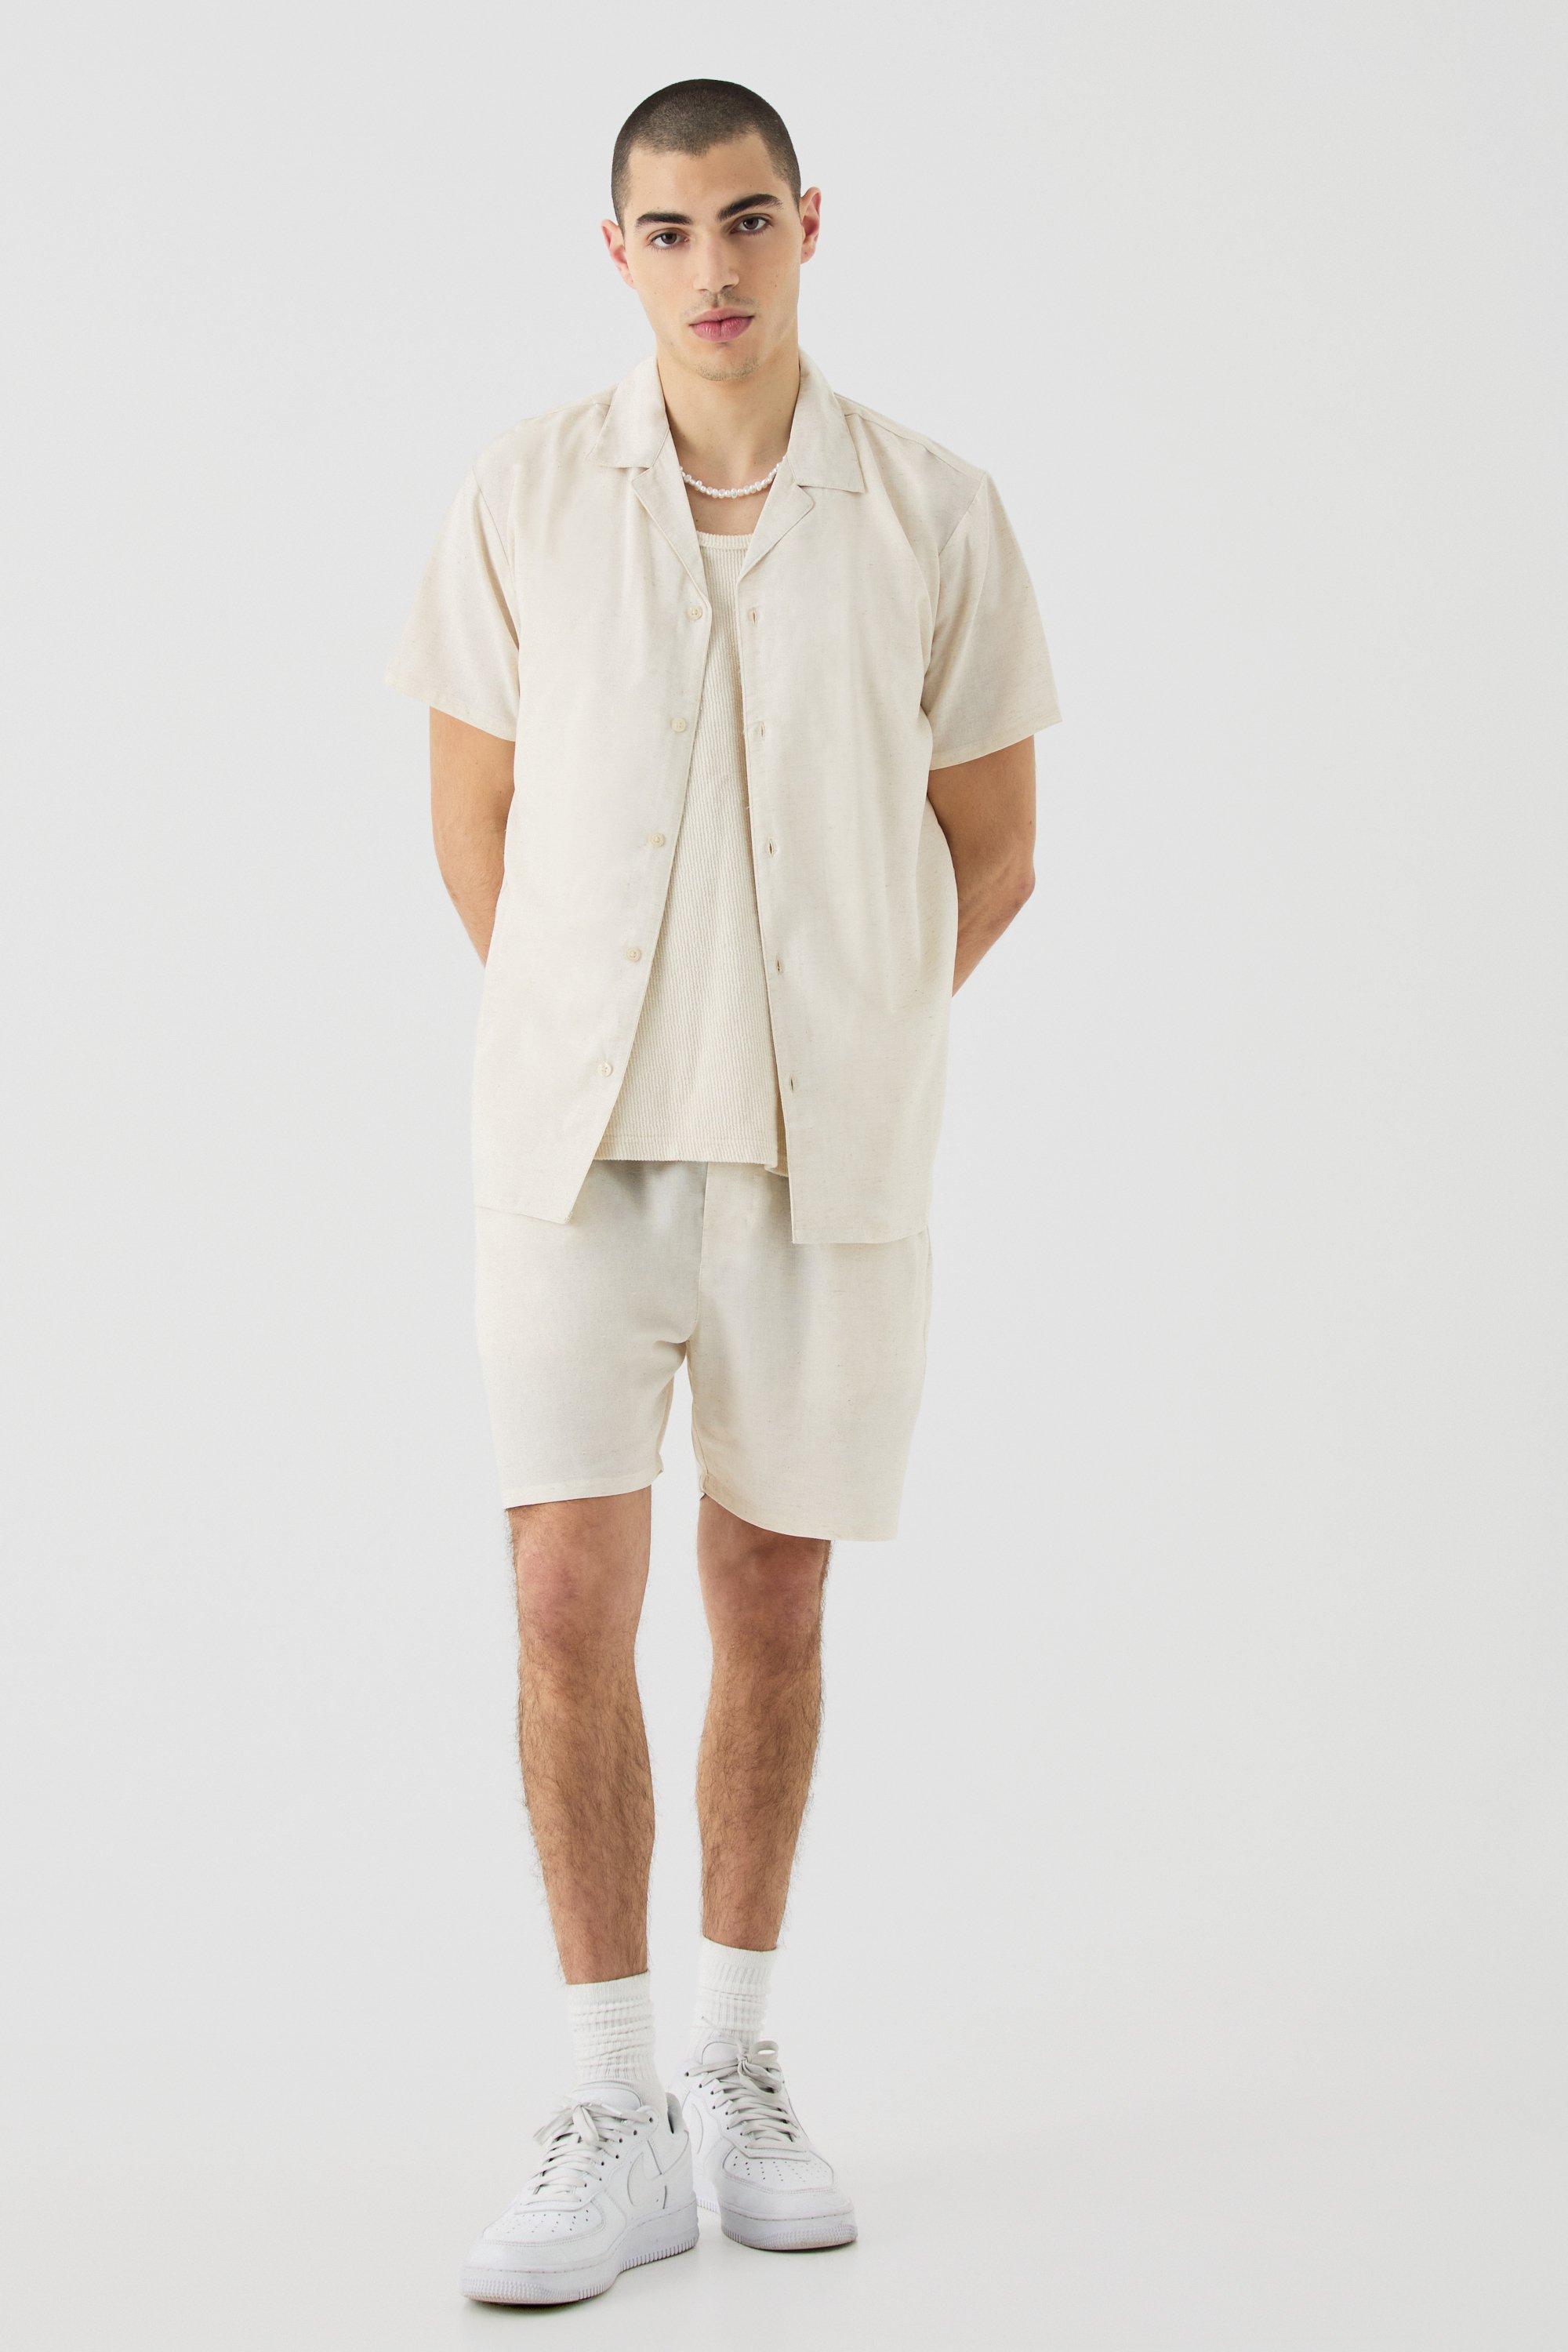 Image of Short Sleeve Linen Shirt & Short, Beige